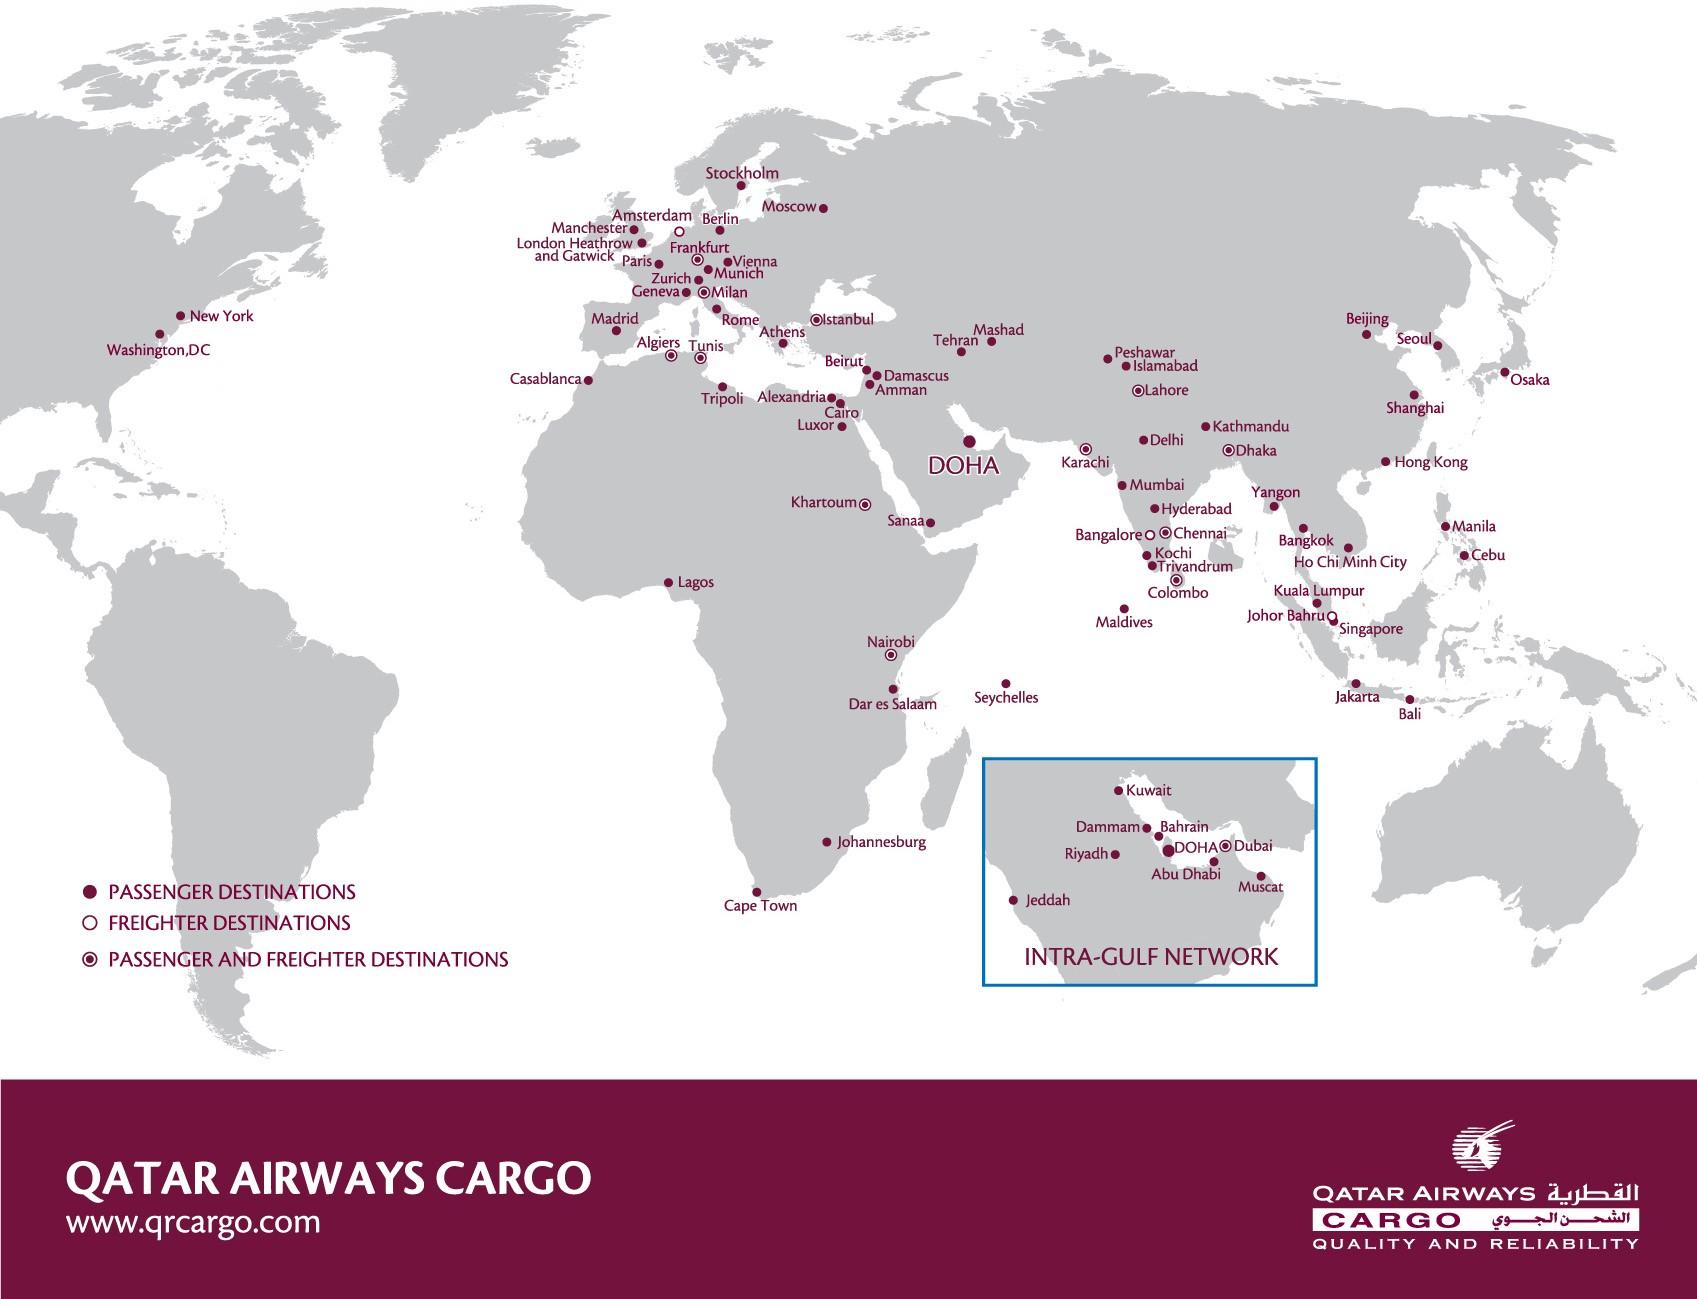 Qatar airways destinations map Qatar airways network map (Western